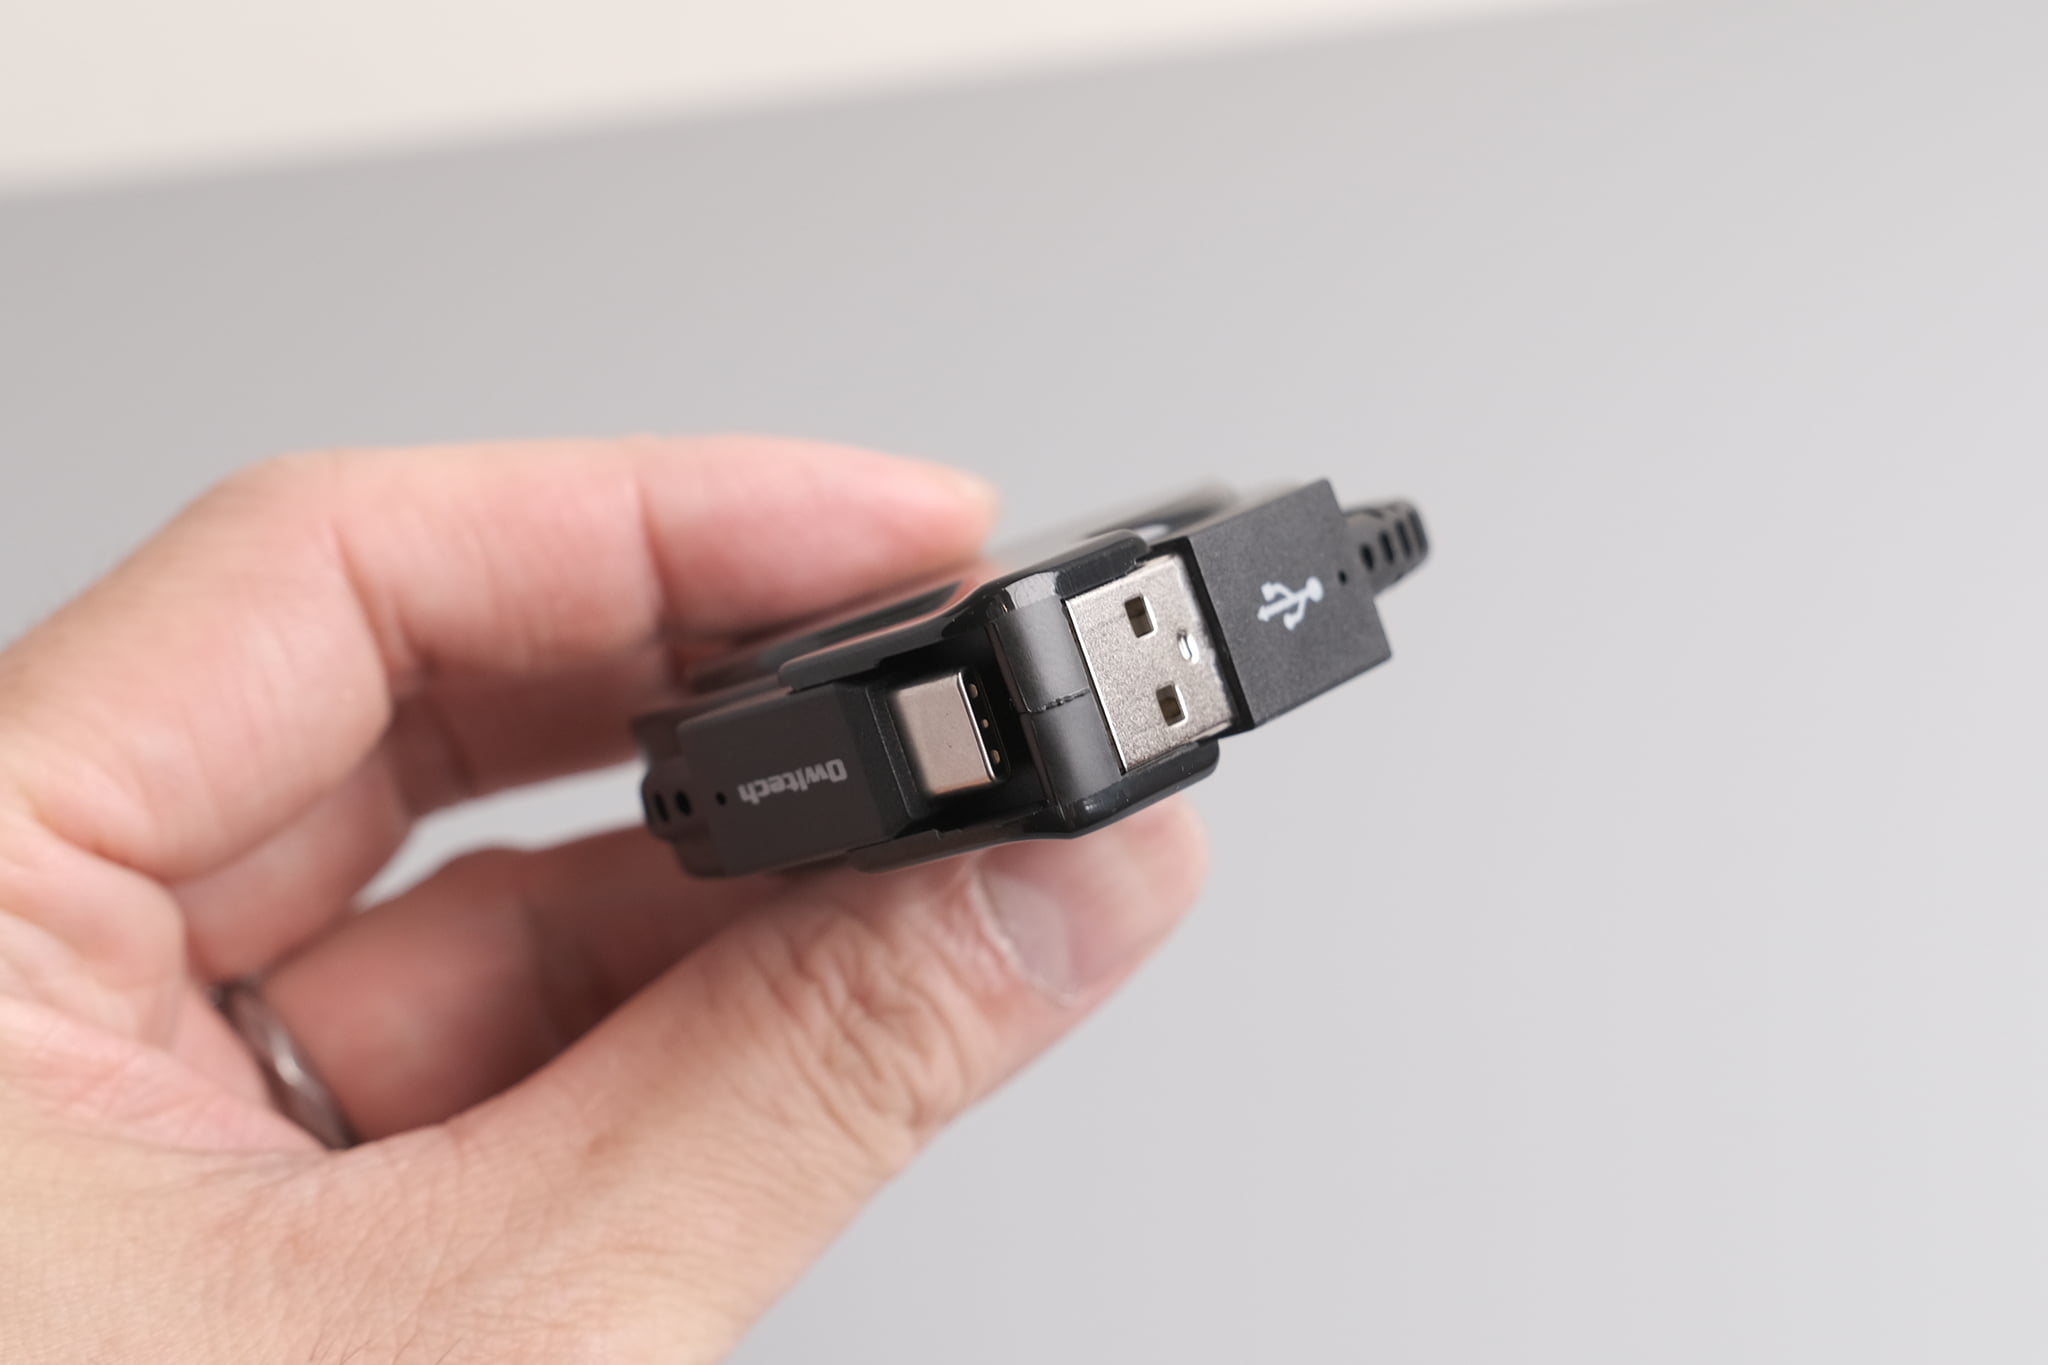 おすすめ 巻取り式ケーブル10選|オウルテック USB Type-A to Type-C 肩方引き出し75cm巻取式ケーブル